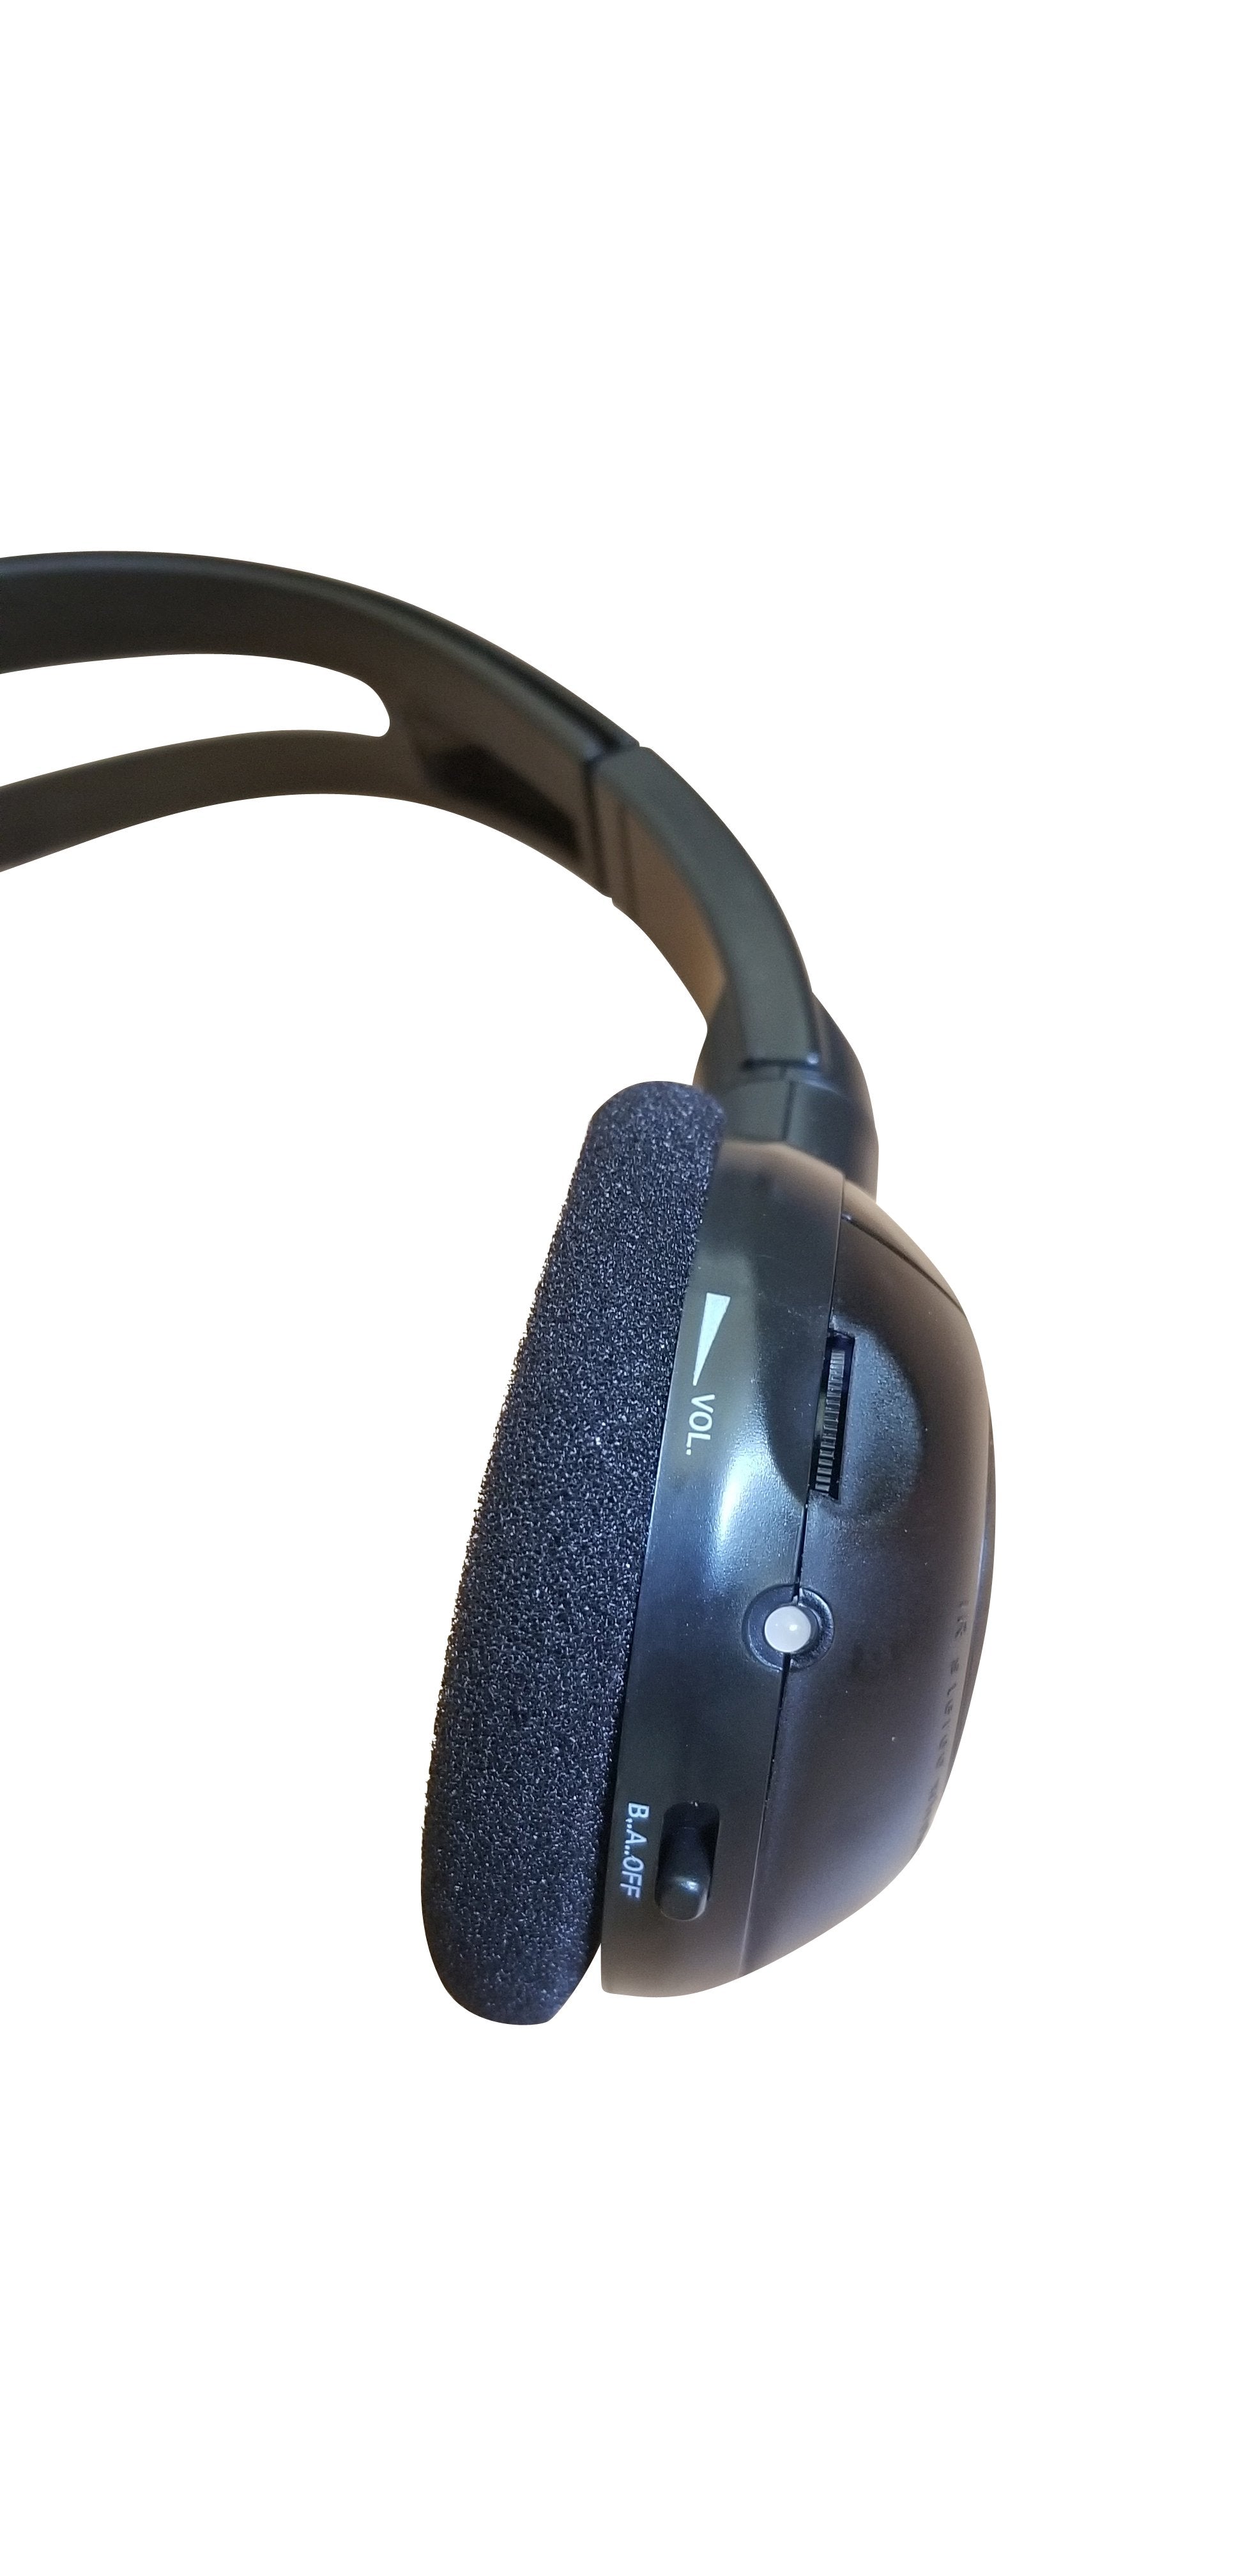 2013 GMC Savana Wireless DVD Headphone